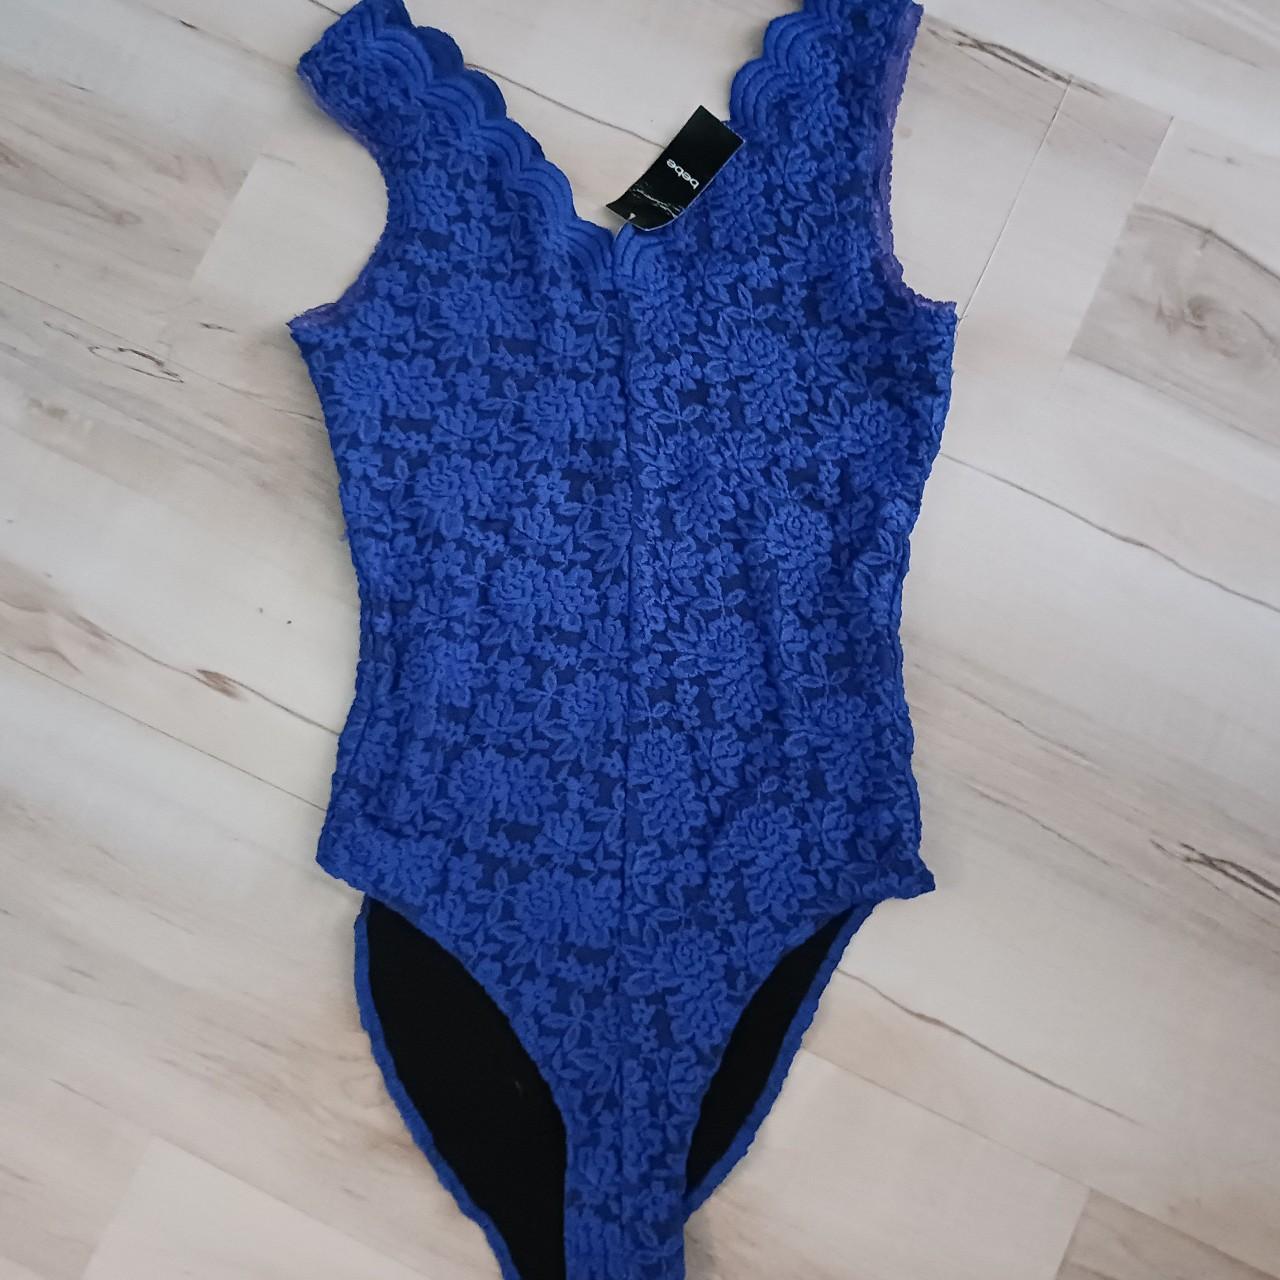 Bebe Women's Blue Bodysuit | Depop